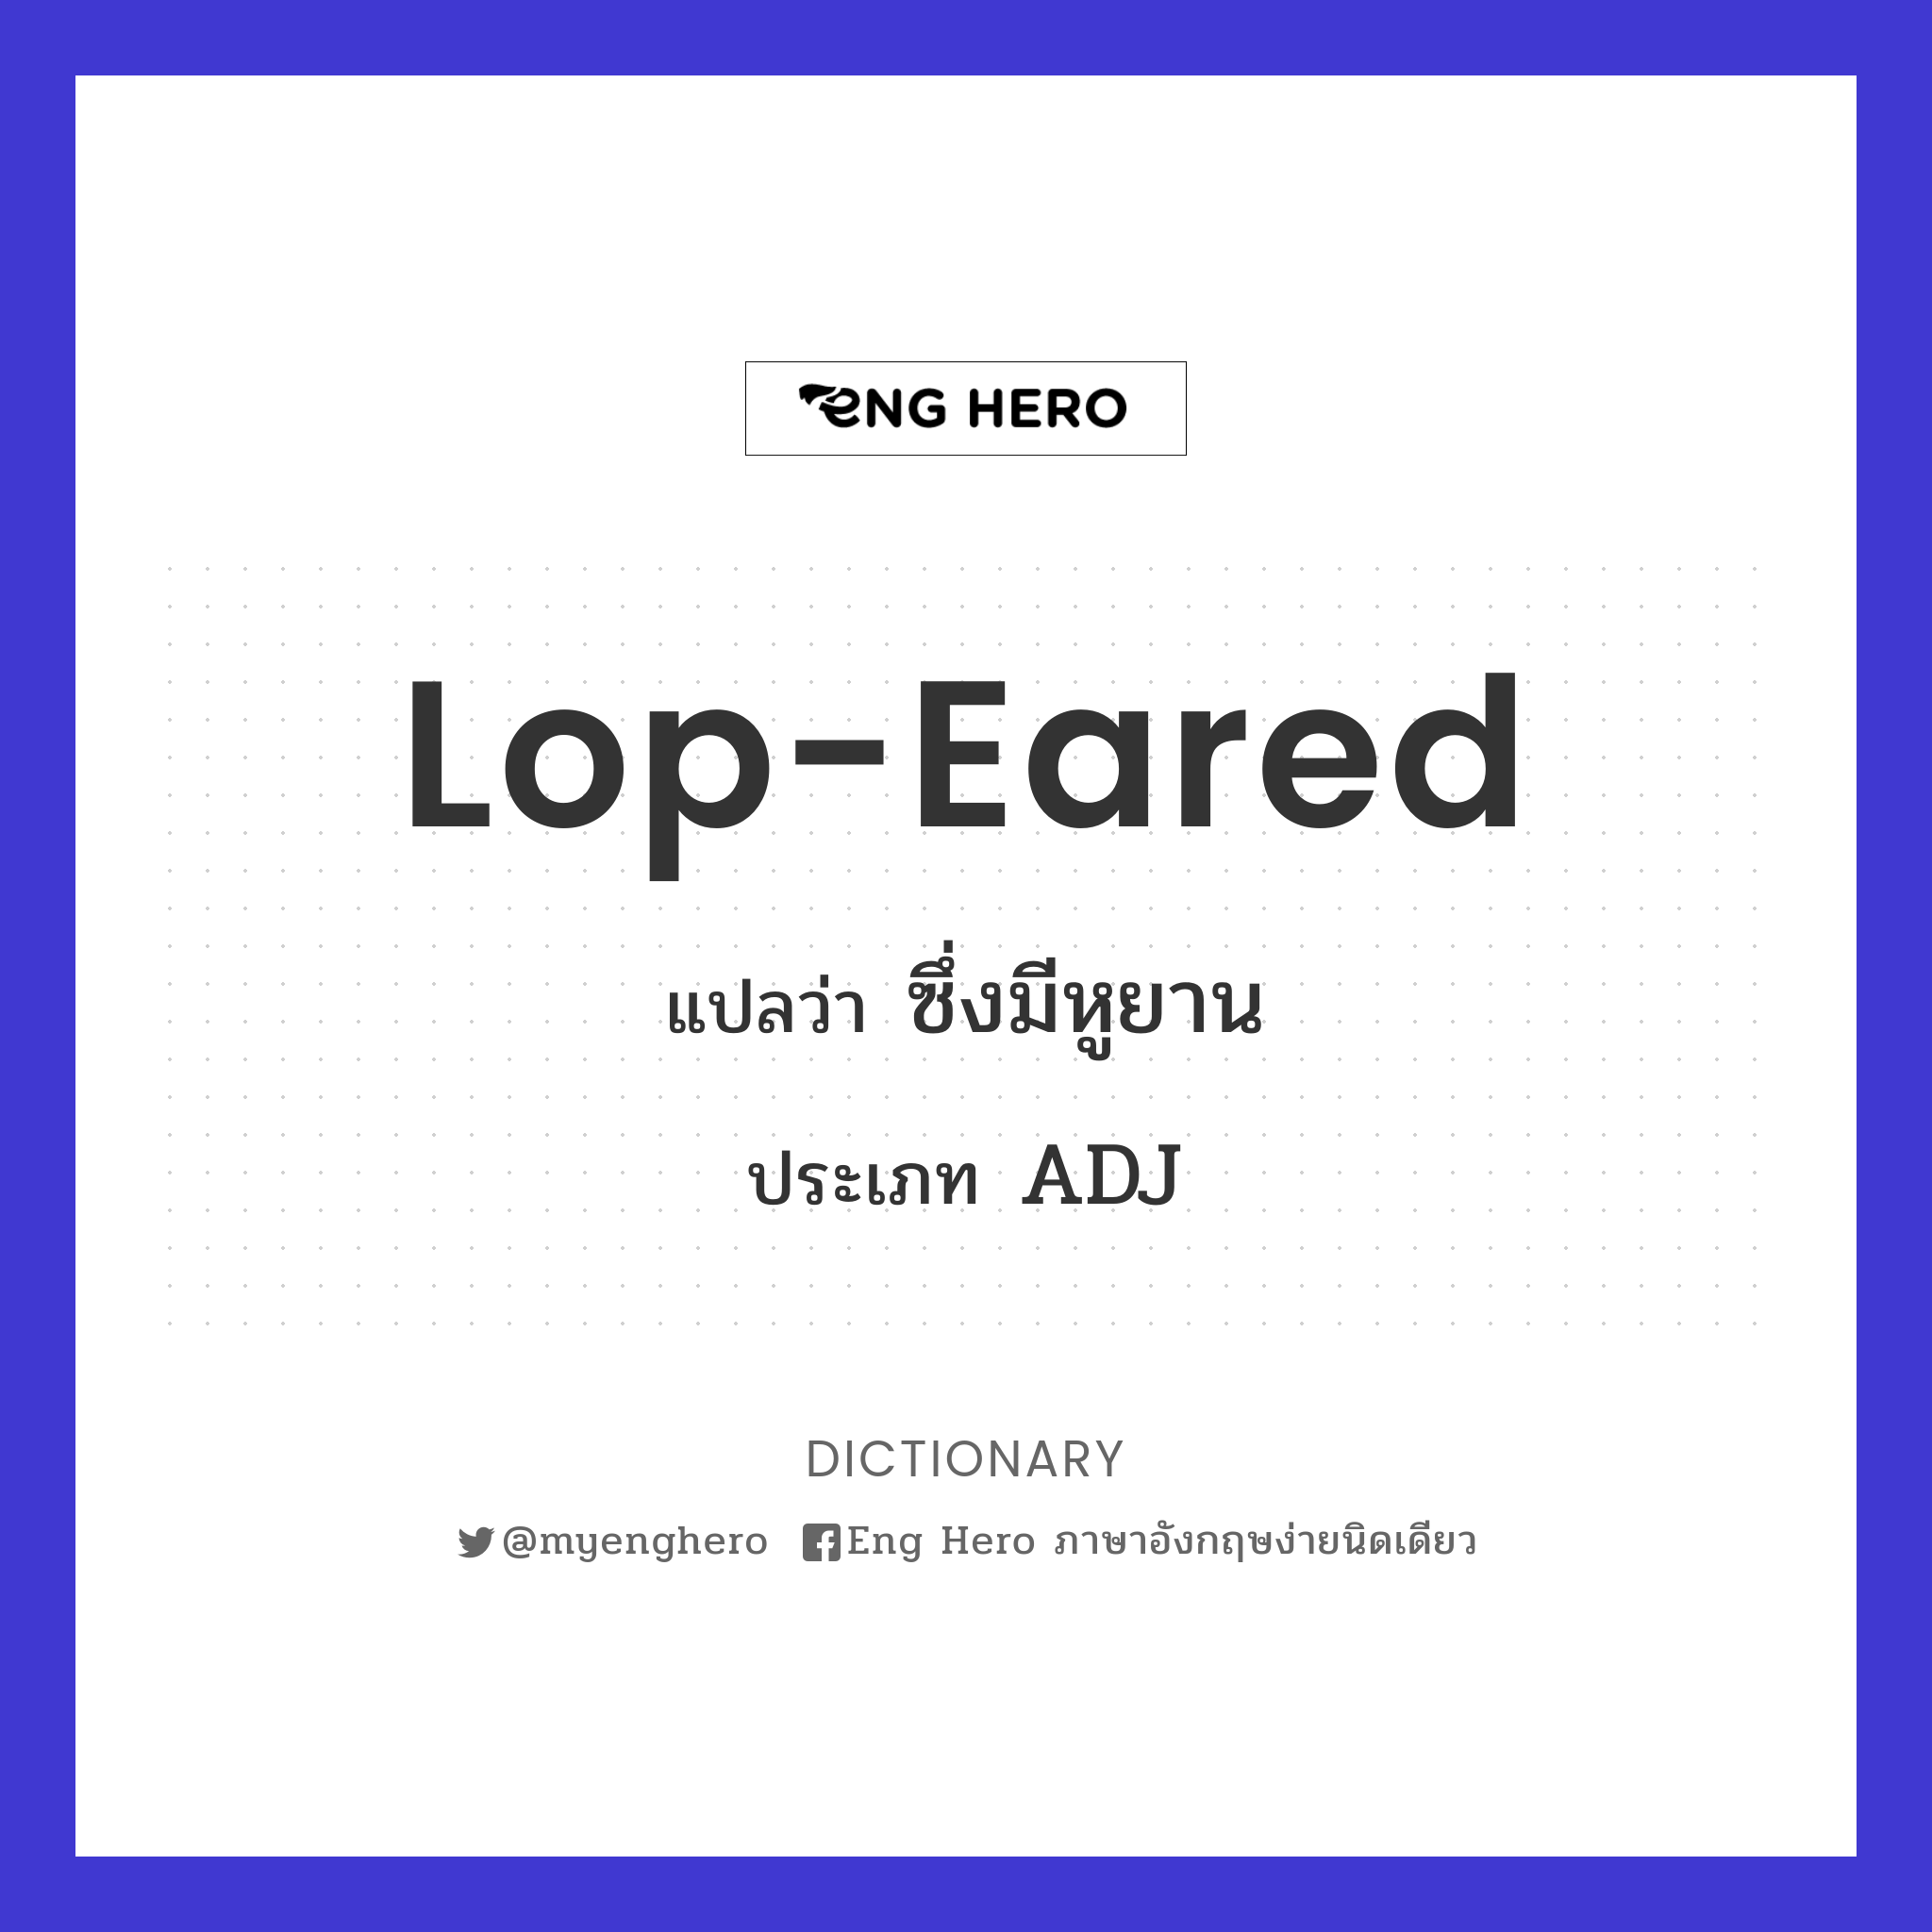 lop-eared